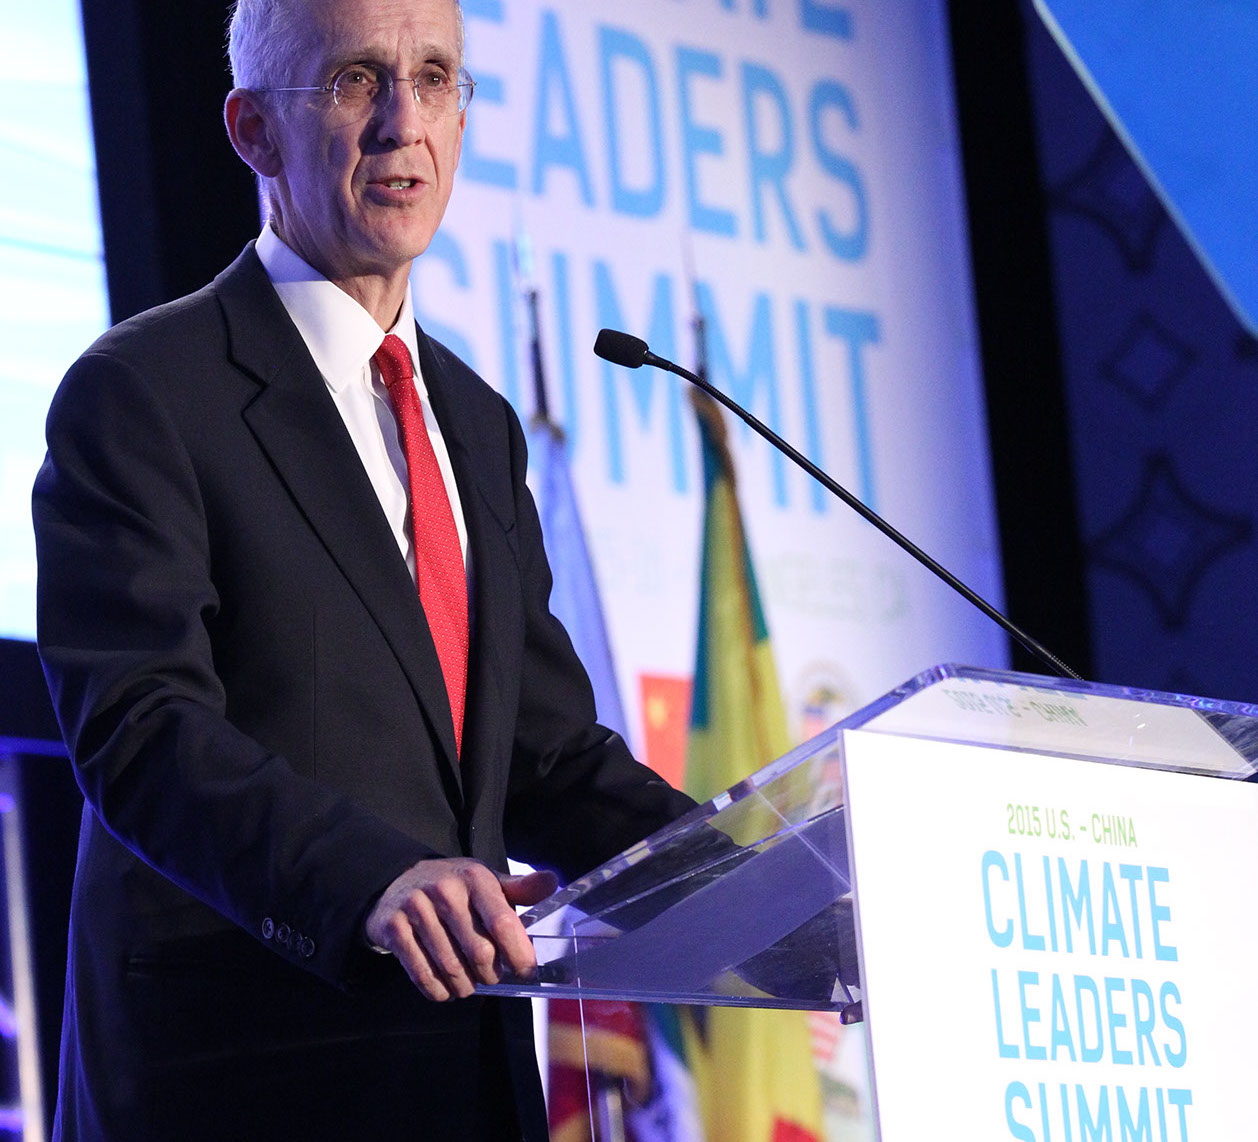 9 15 2015- Climate Leaders Summit